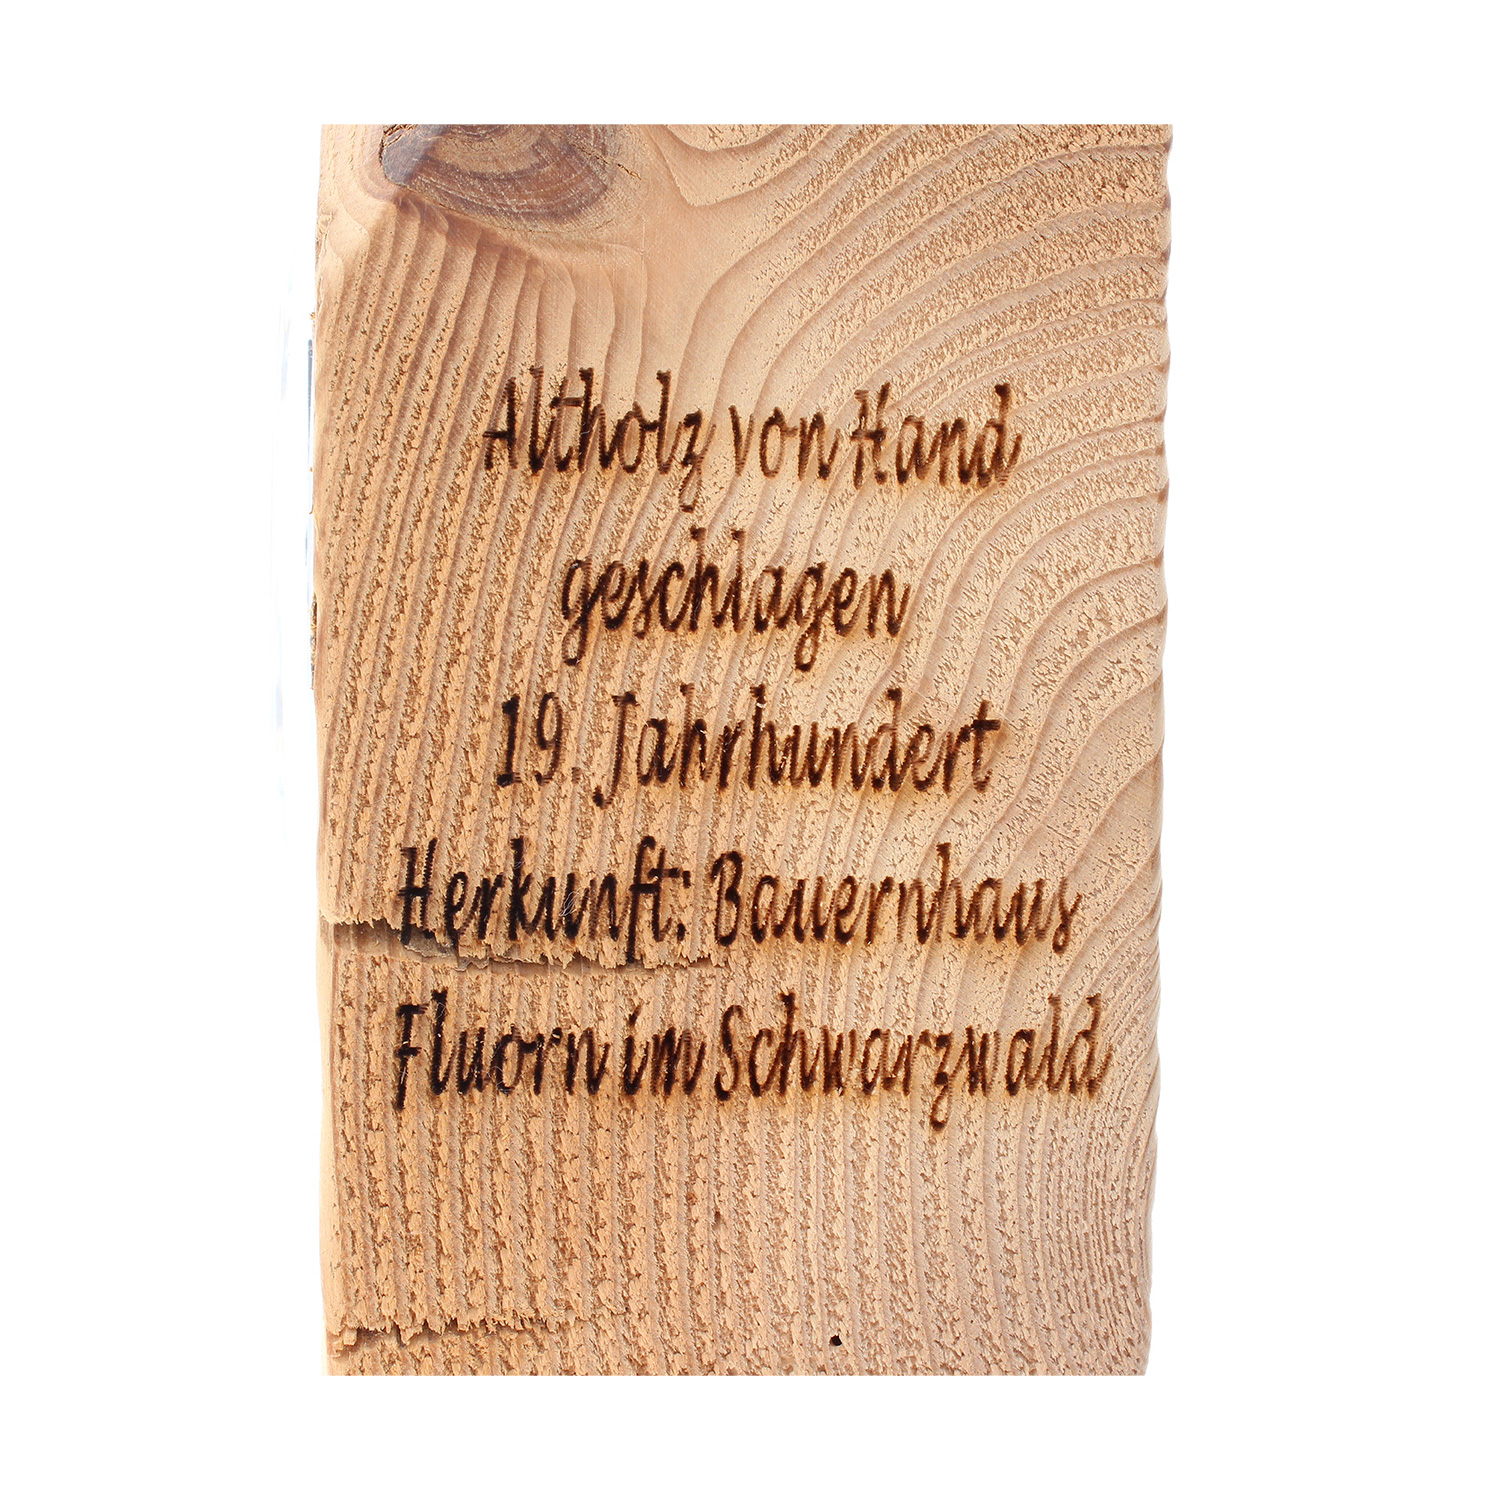 Altholz-Uhr Schwarzwaldhäusle, Zifferblatt weiß